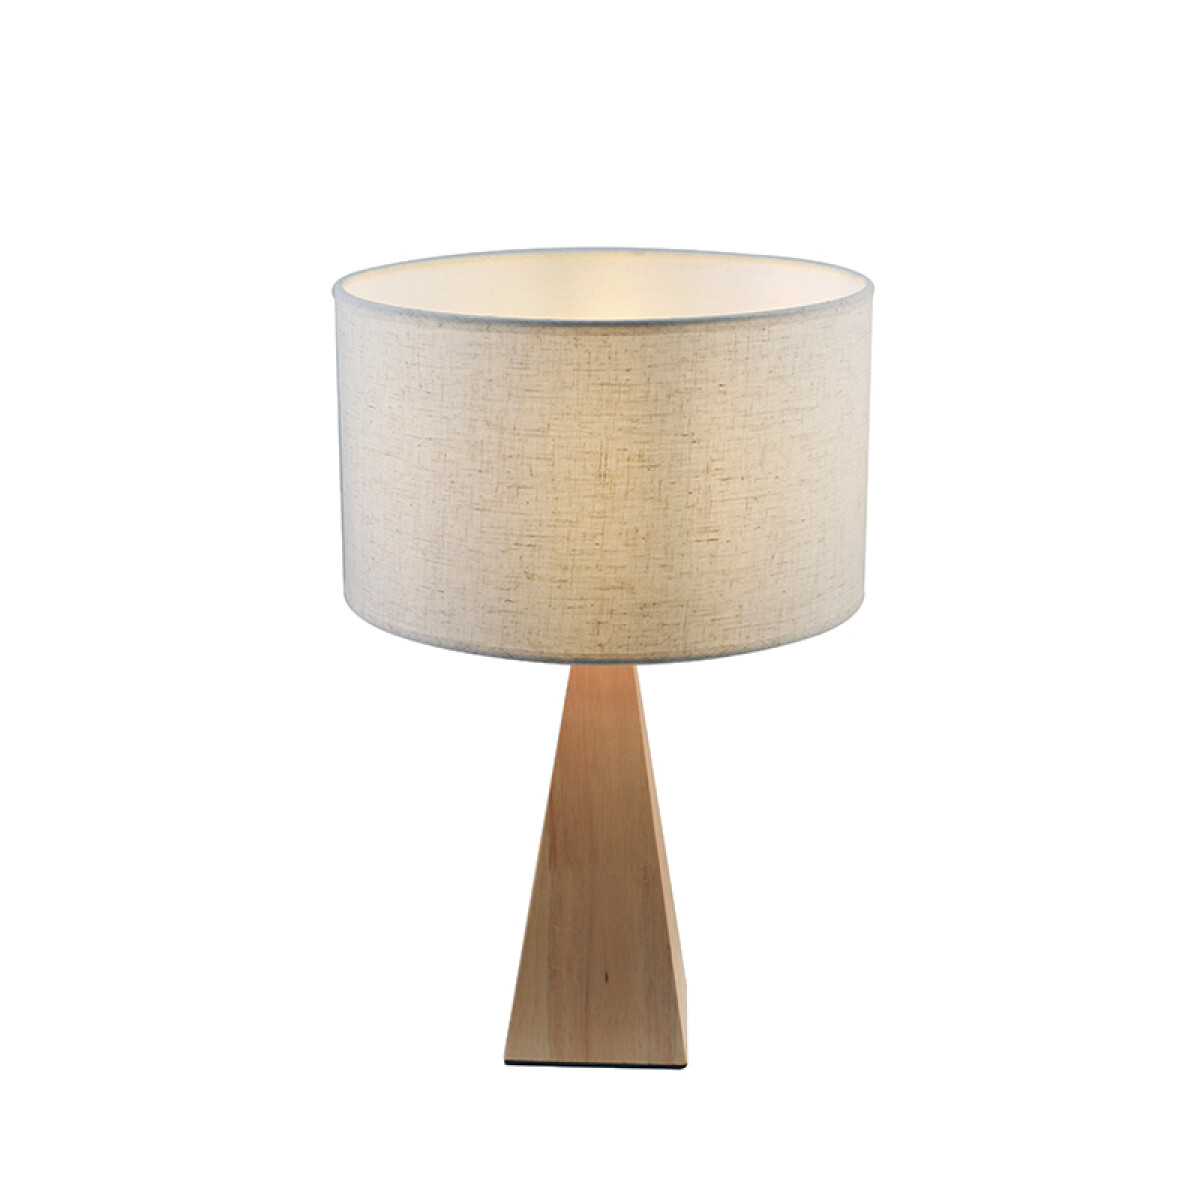 Portátil mesa de madera y pant. de tela beige E27 - IX9456 